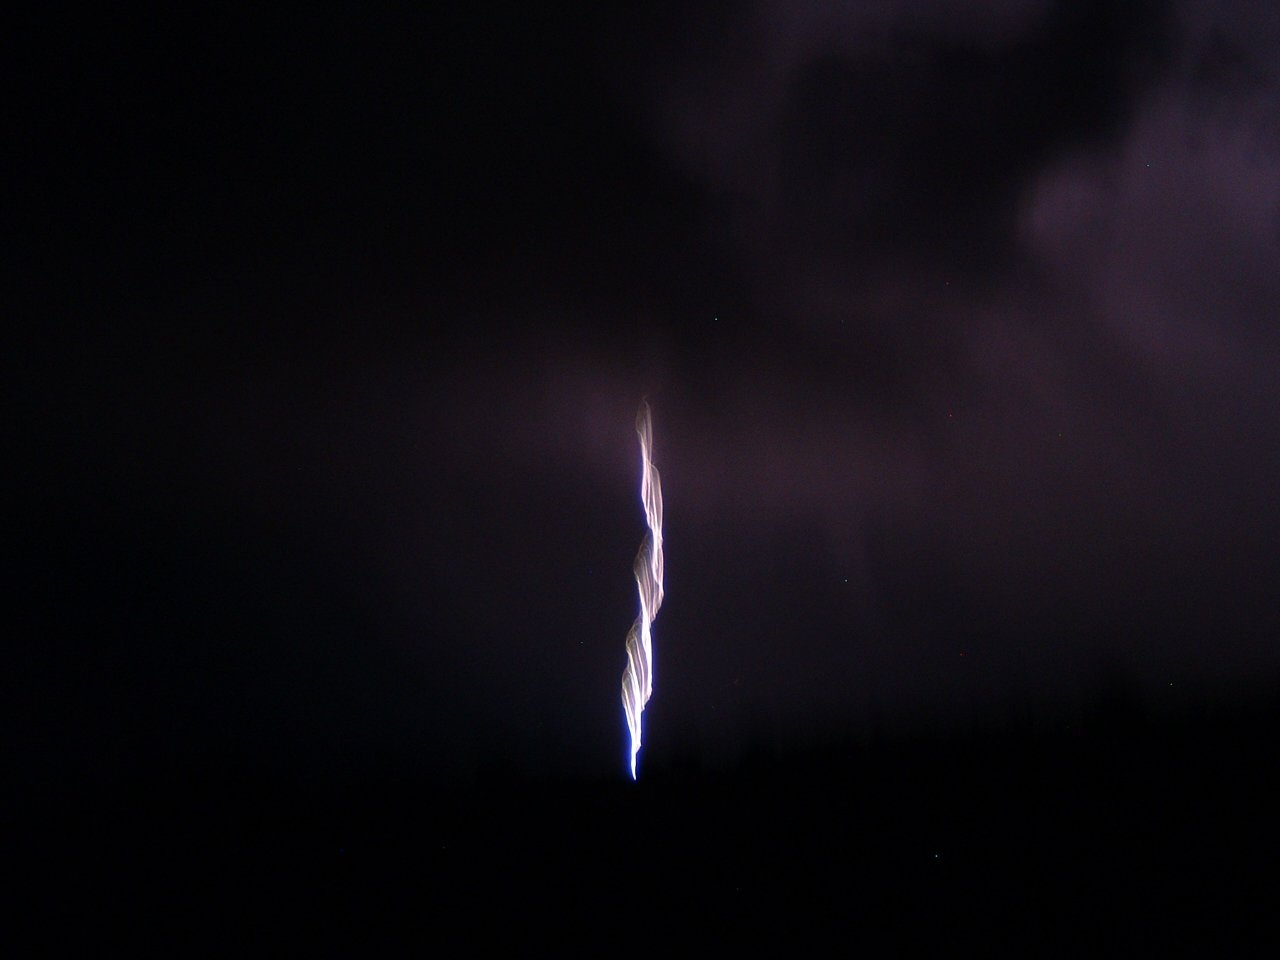 More Lightning